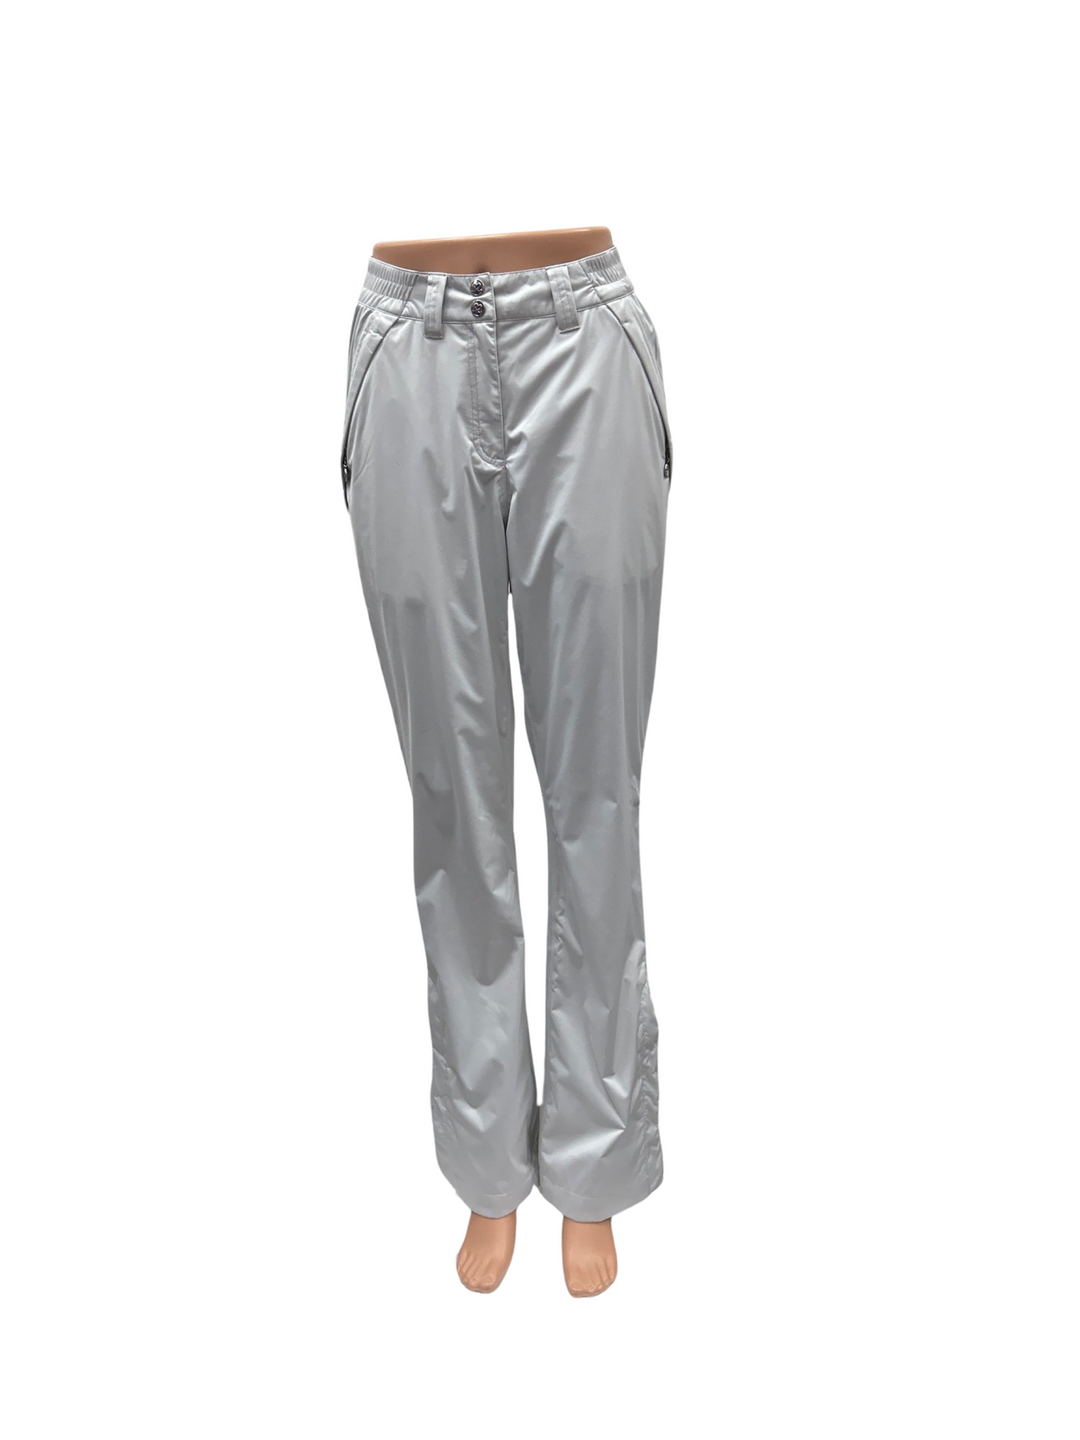 Daily Sports Golf Rain Pants -  Grey - Size X-Small - Skorzie